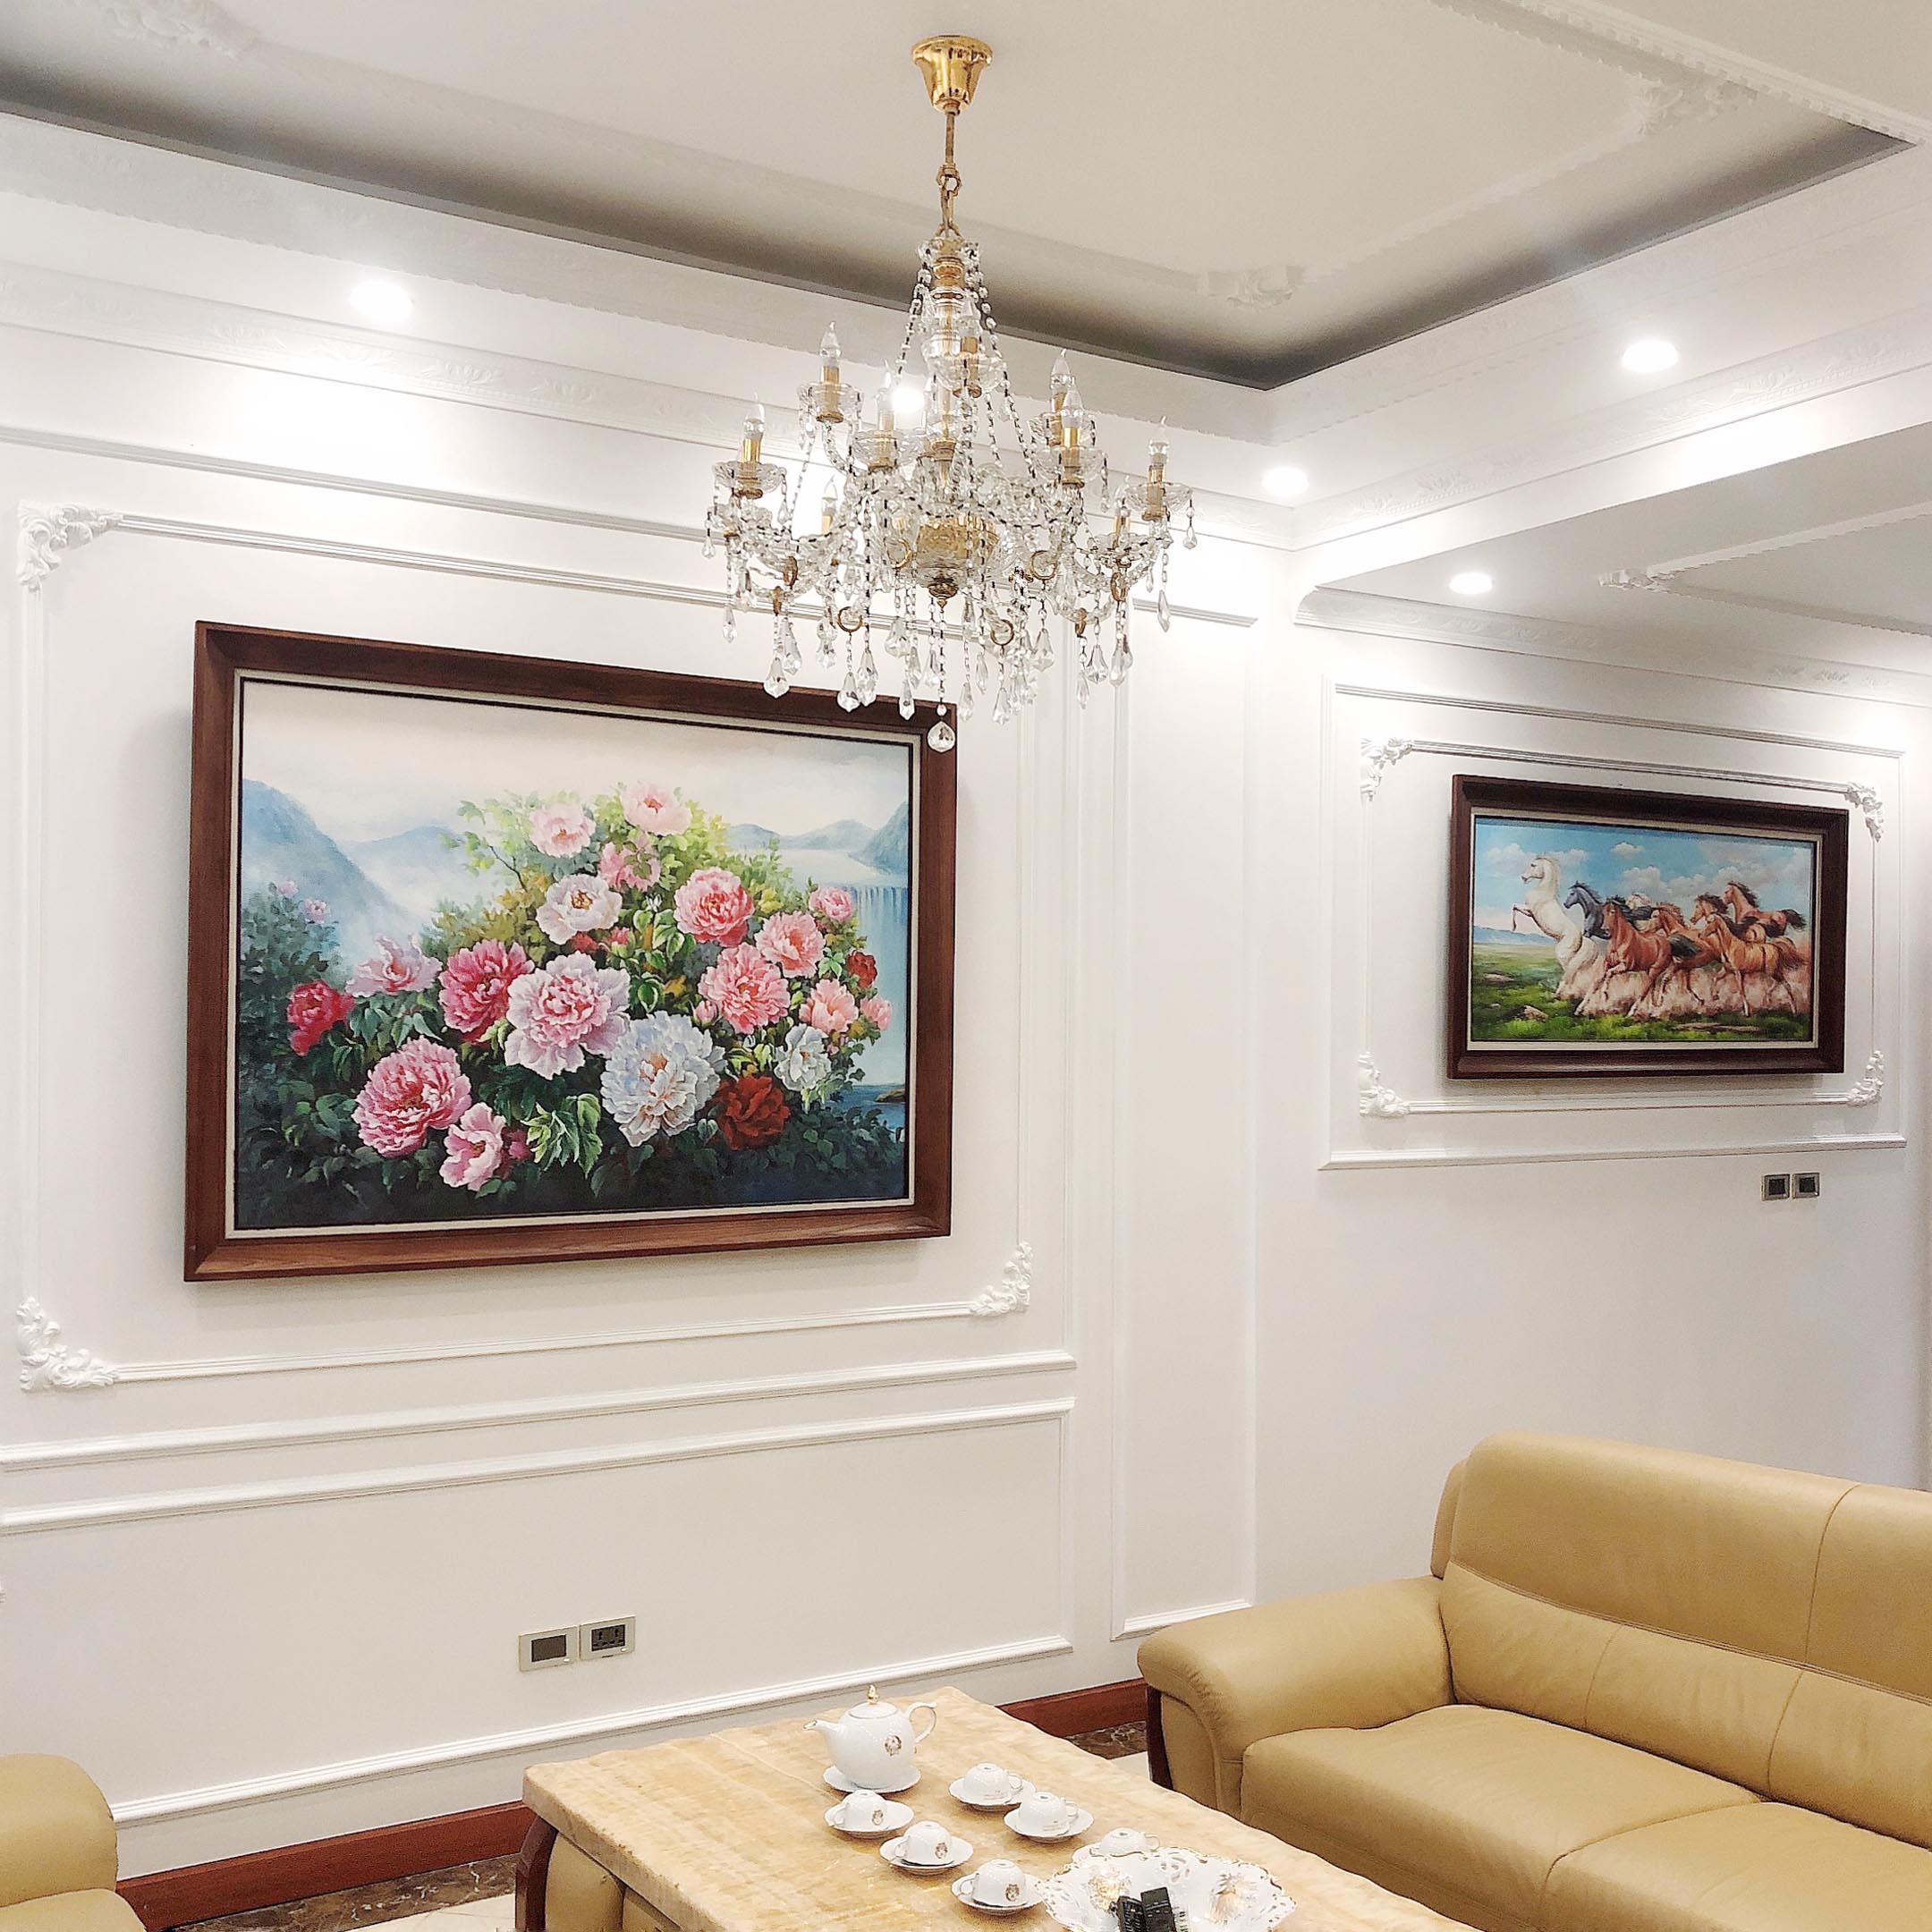 Bàn giao tranh sơn acrylic cao cấp vẽ Hoa Mẫu Đơn và Bát Mã cho khách hàng tại Trường Chinh, Hà Nội